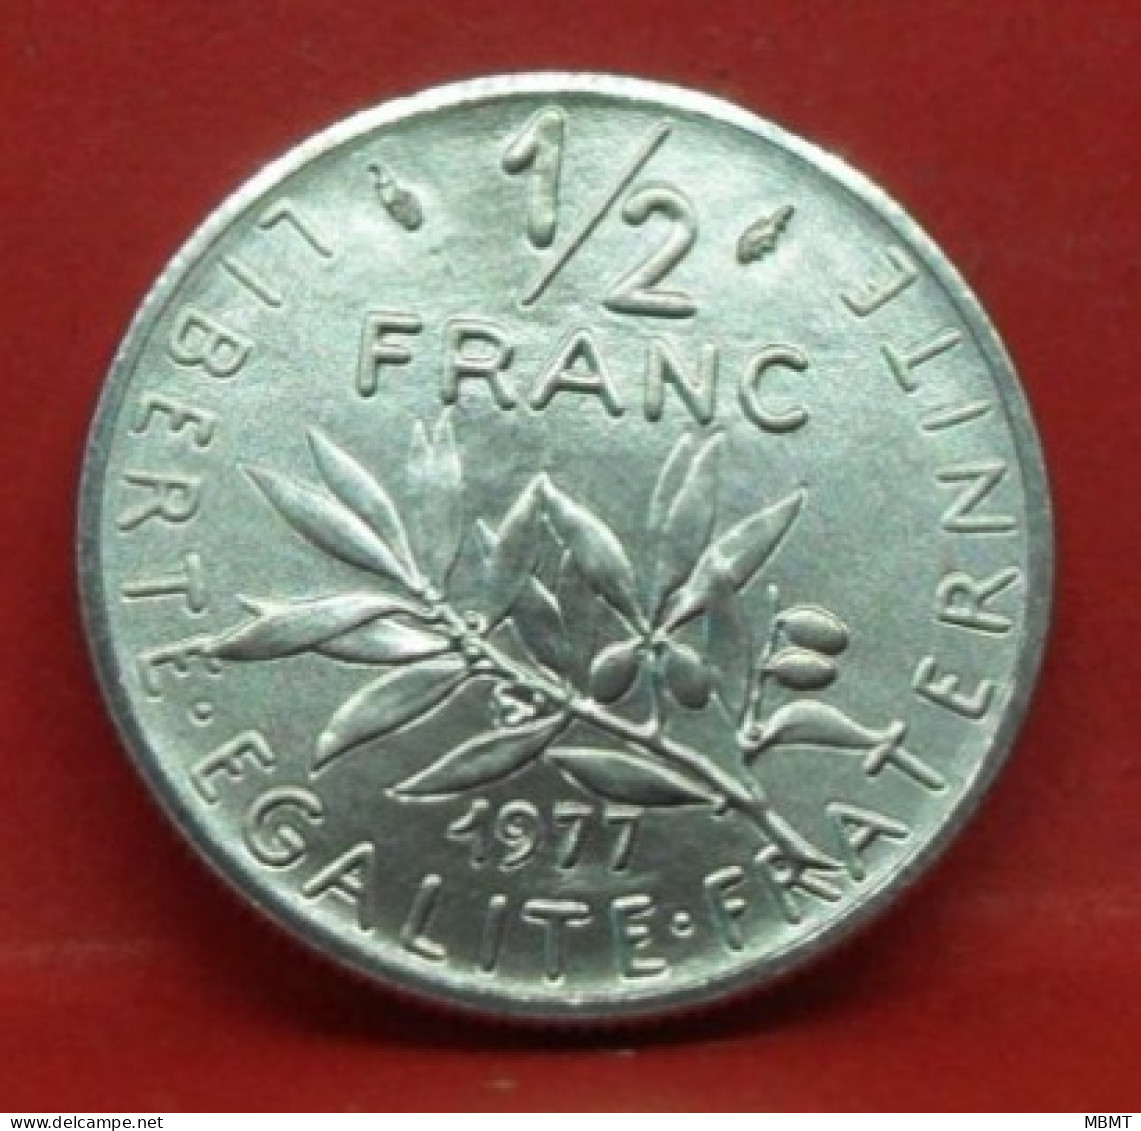 50 Centimes Semeuse 1977 - FDC - Pièce Monnaie France - Article N°1064 - 50 Centimes